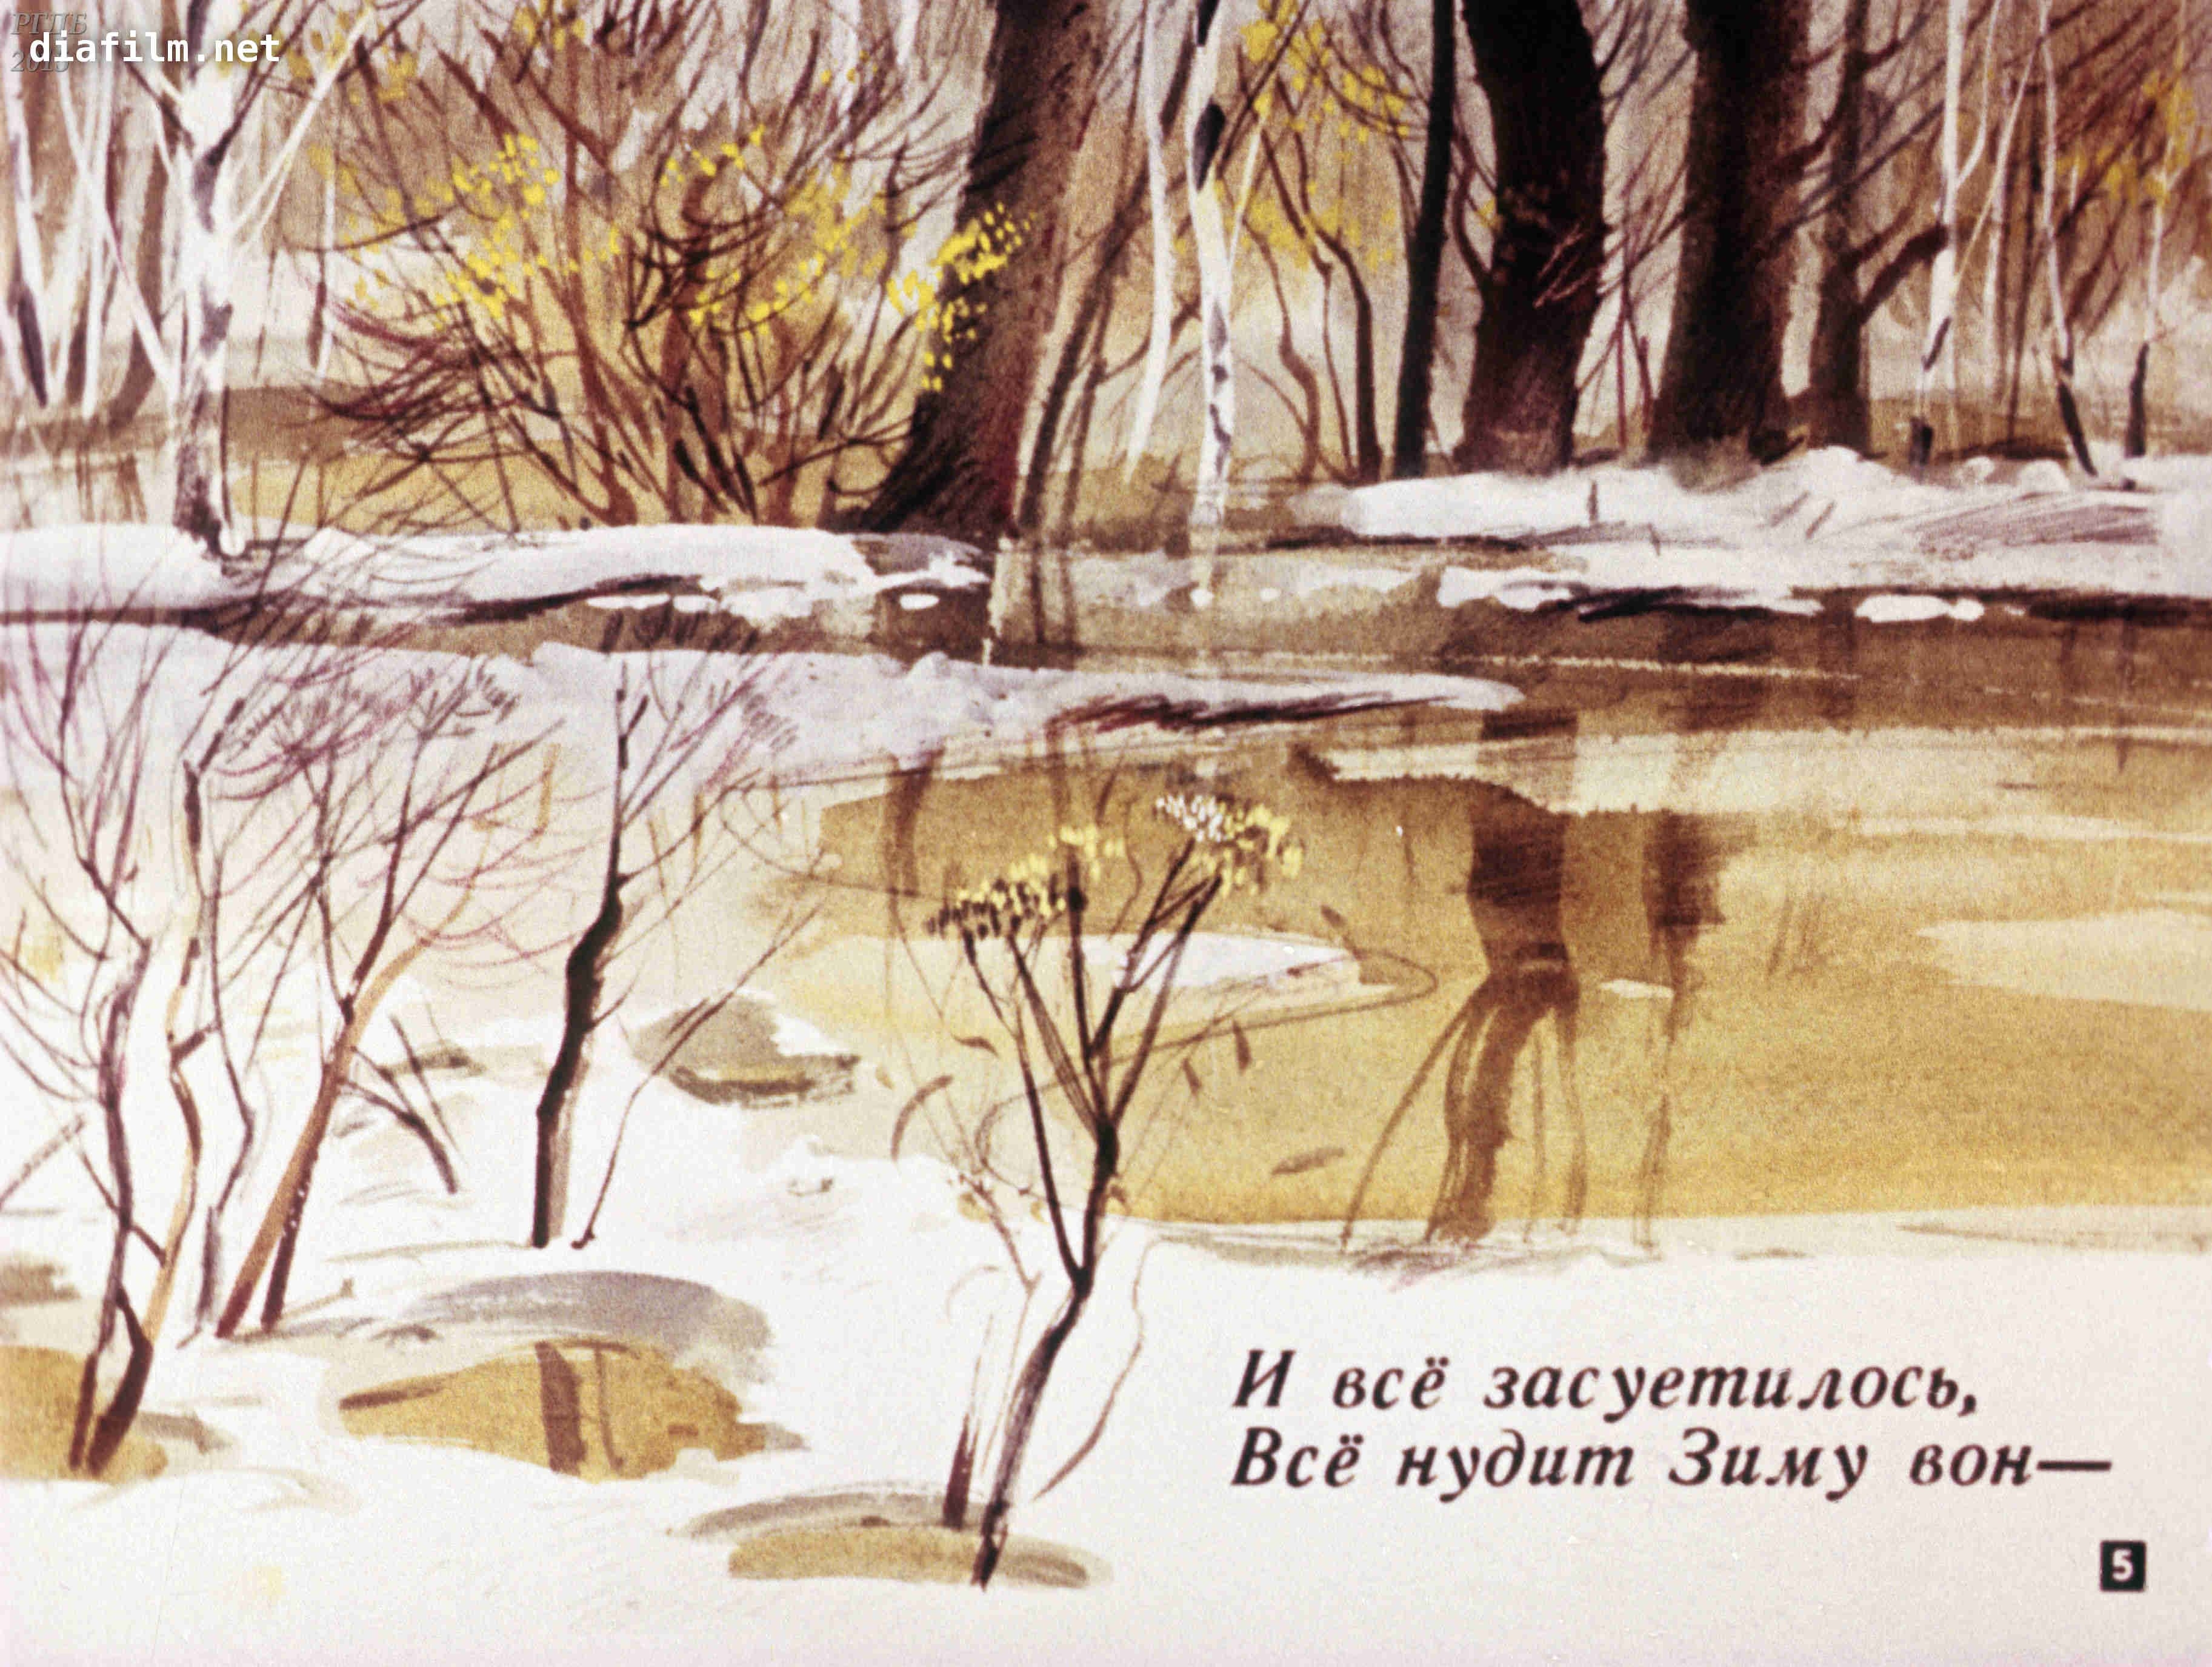 Тютчев тема весны. Иллюстрация зима Тютчева. Иллюстрация к стихотворению Тютчева весенние воды. Рисунок к стихотворению зима недаром злится.